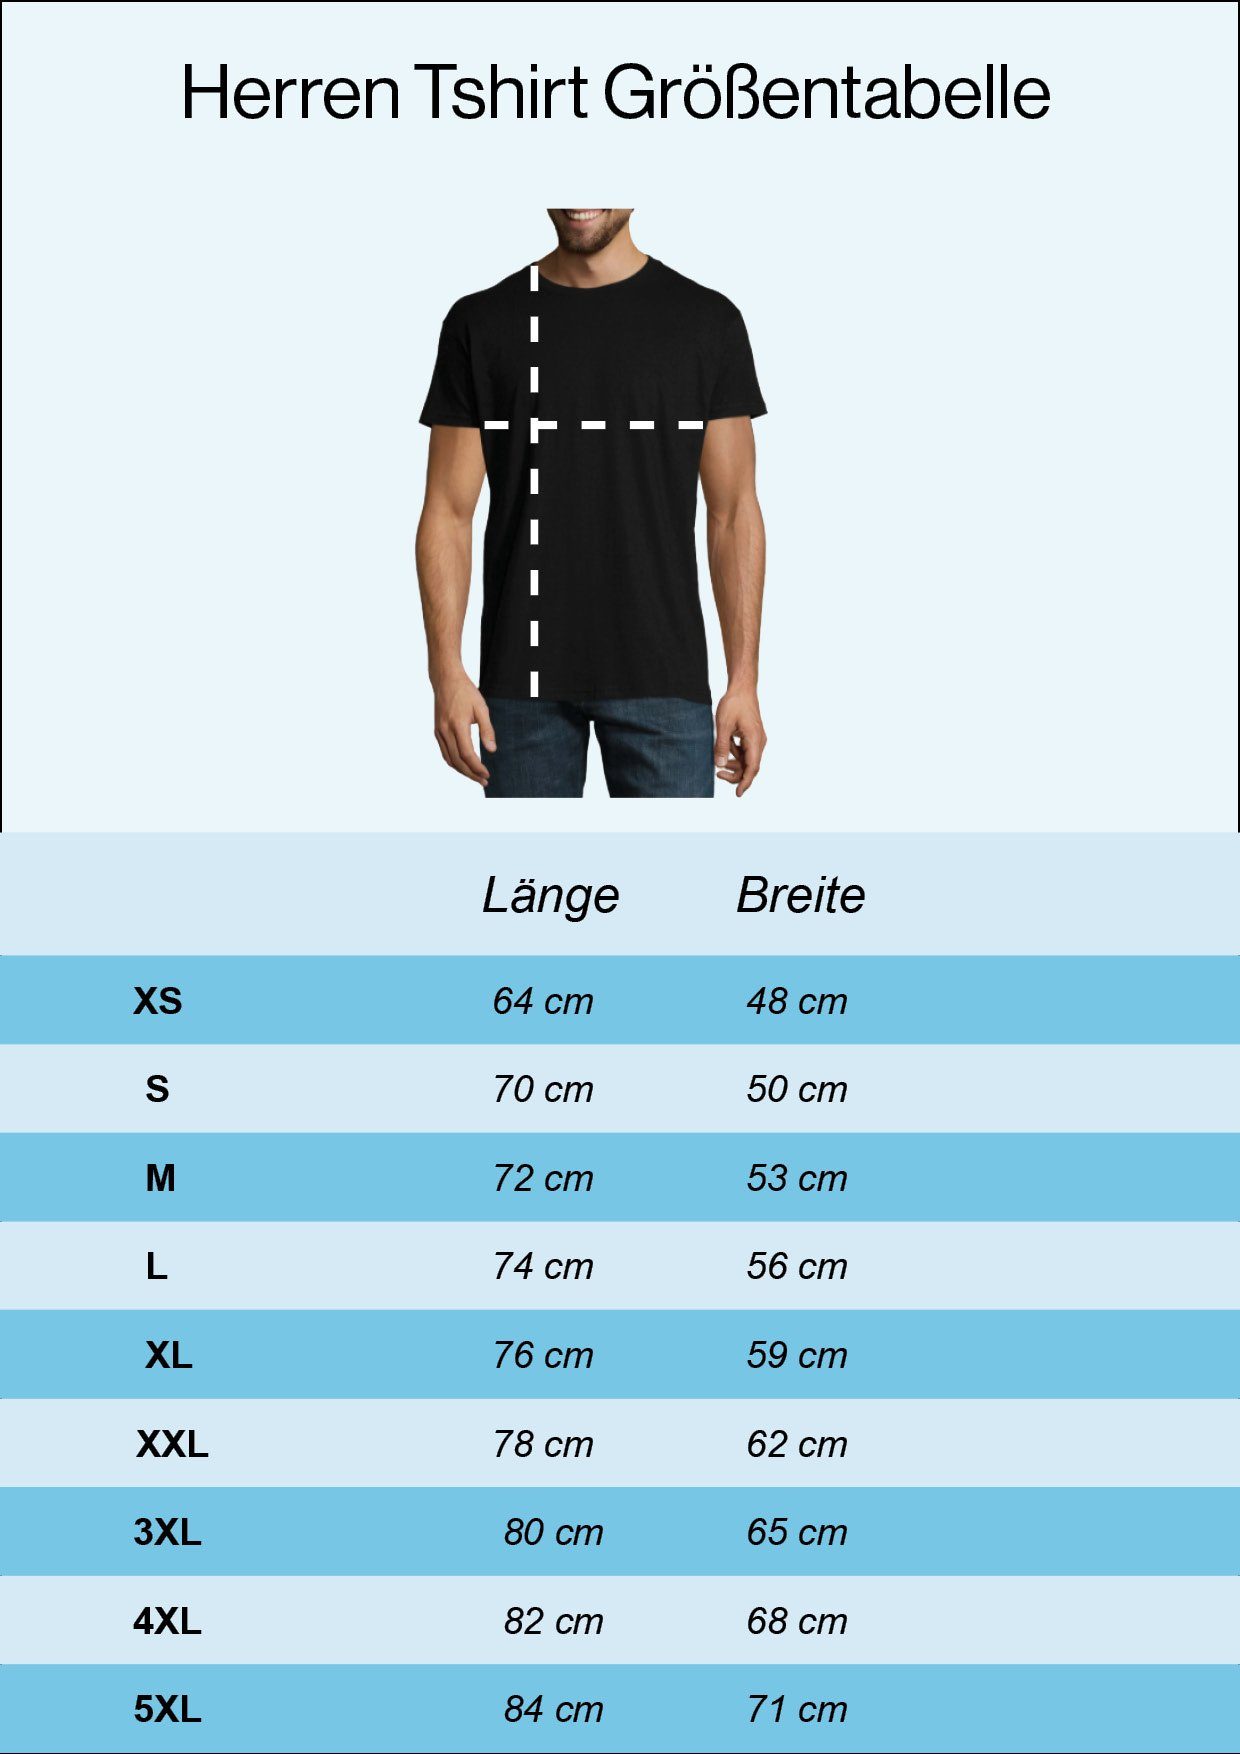 Youth Designz T-Shirt Dachdecker Herren Burgund Frontprint lustigem mit Shirt Spruch